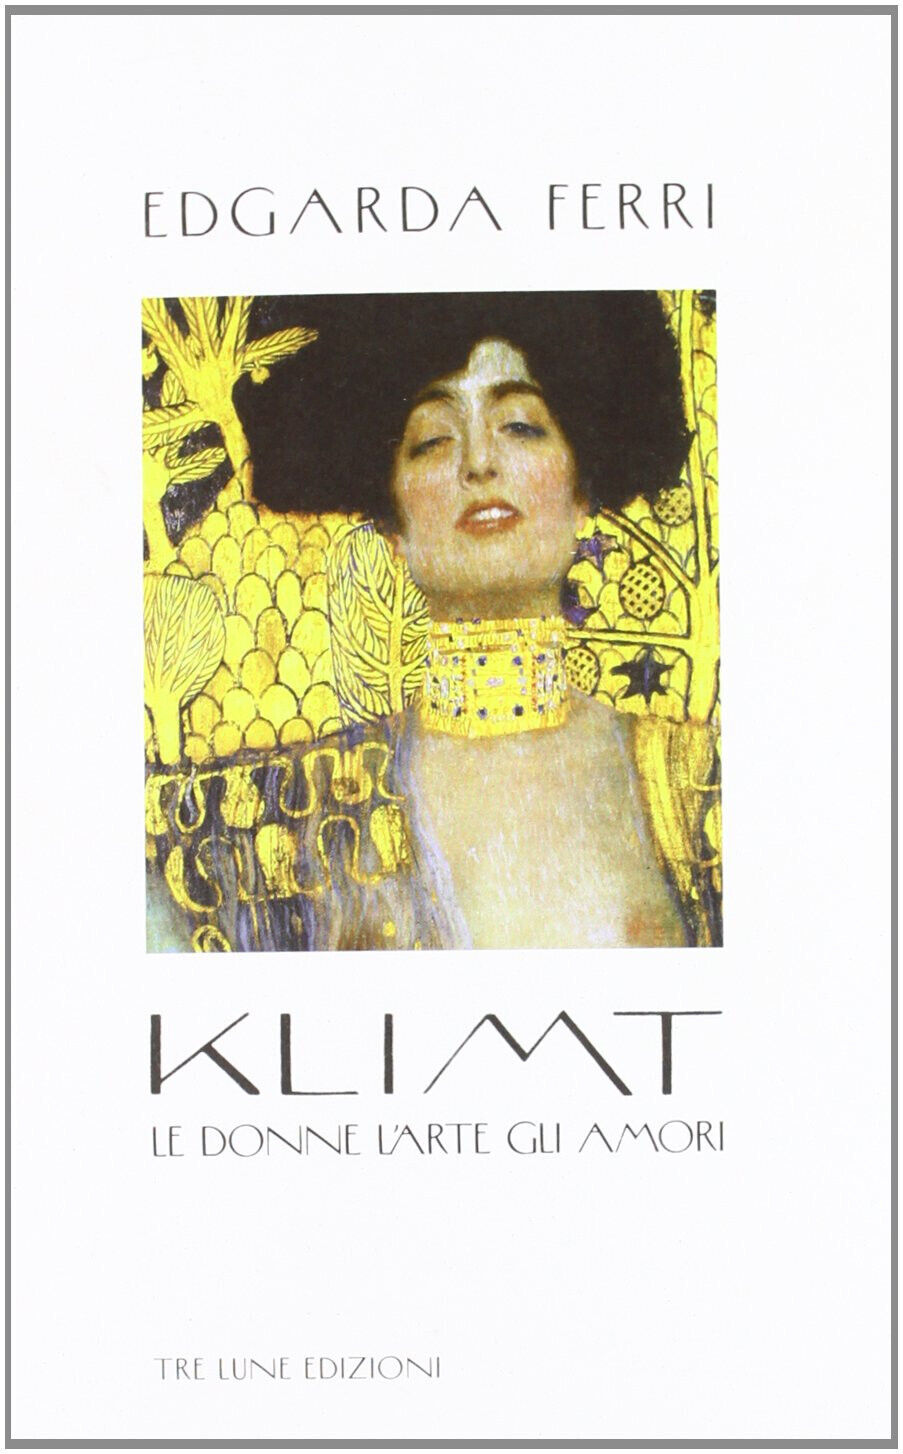 Klimt. Le donne, l'arte, gli amori - Edgarda Ferri - Tre Lune